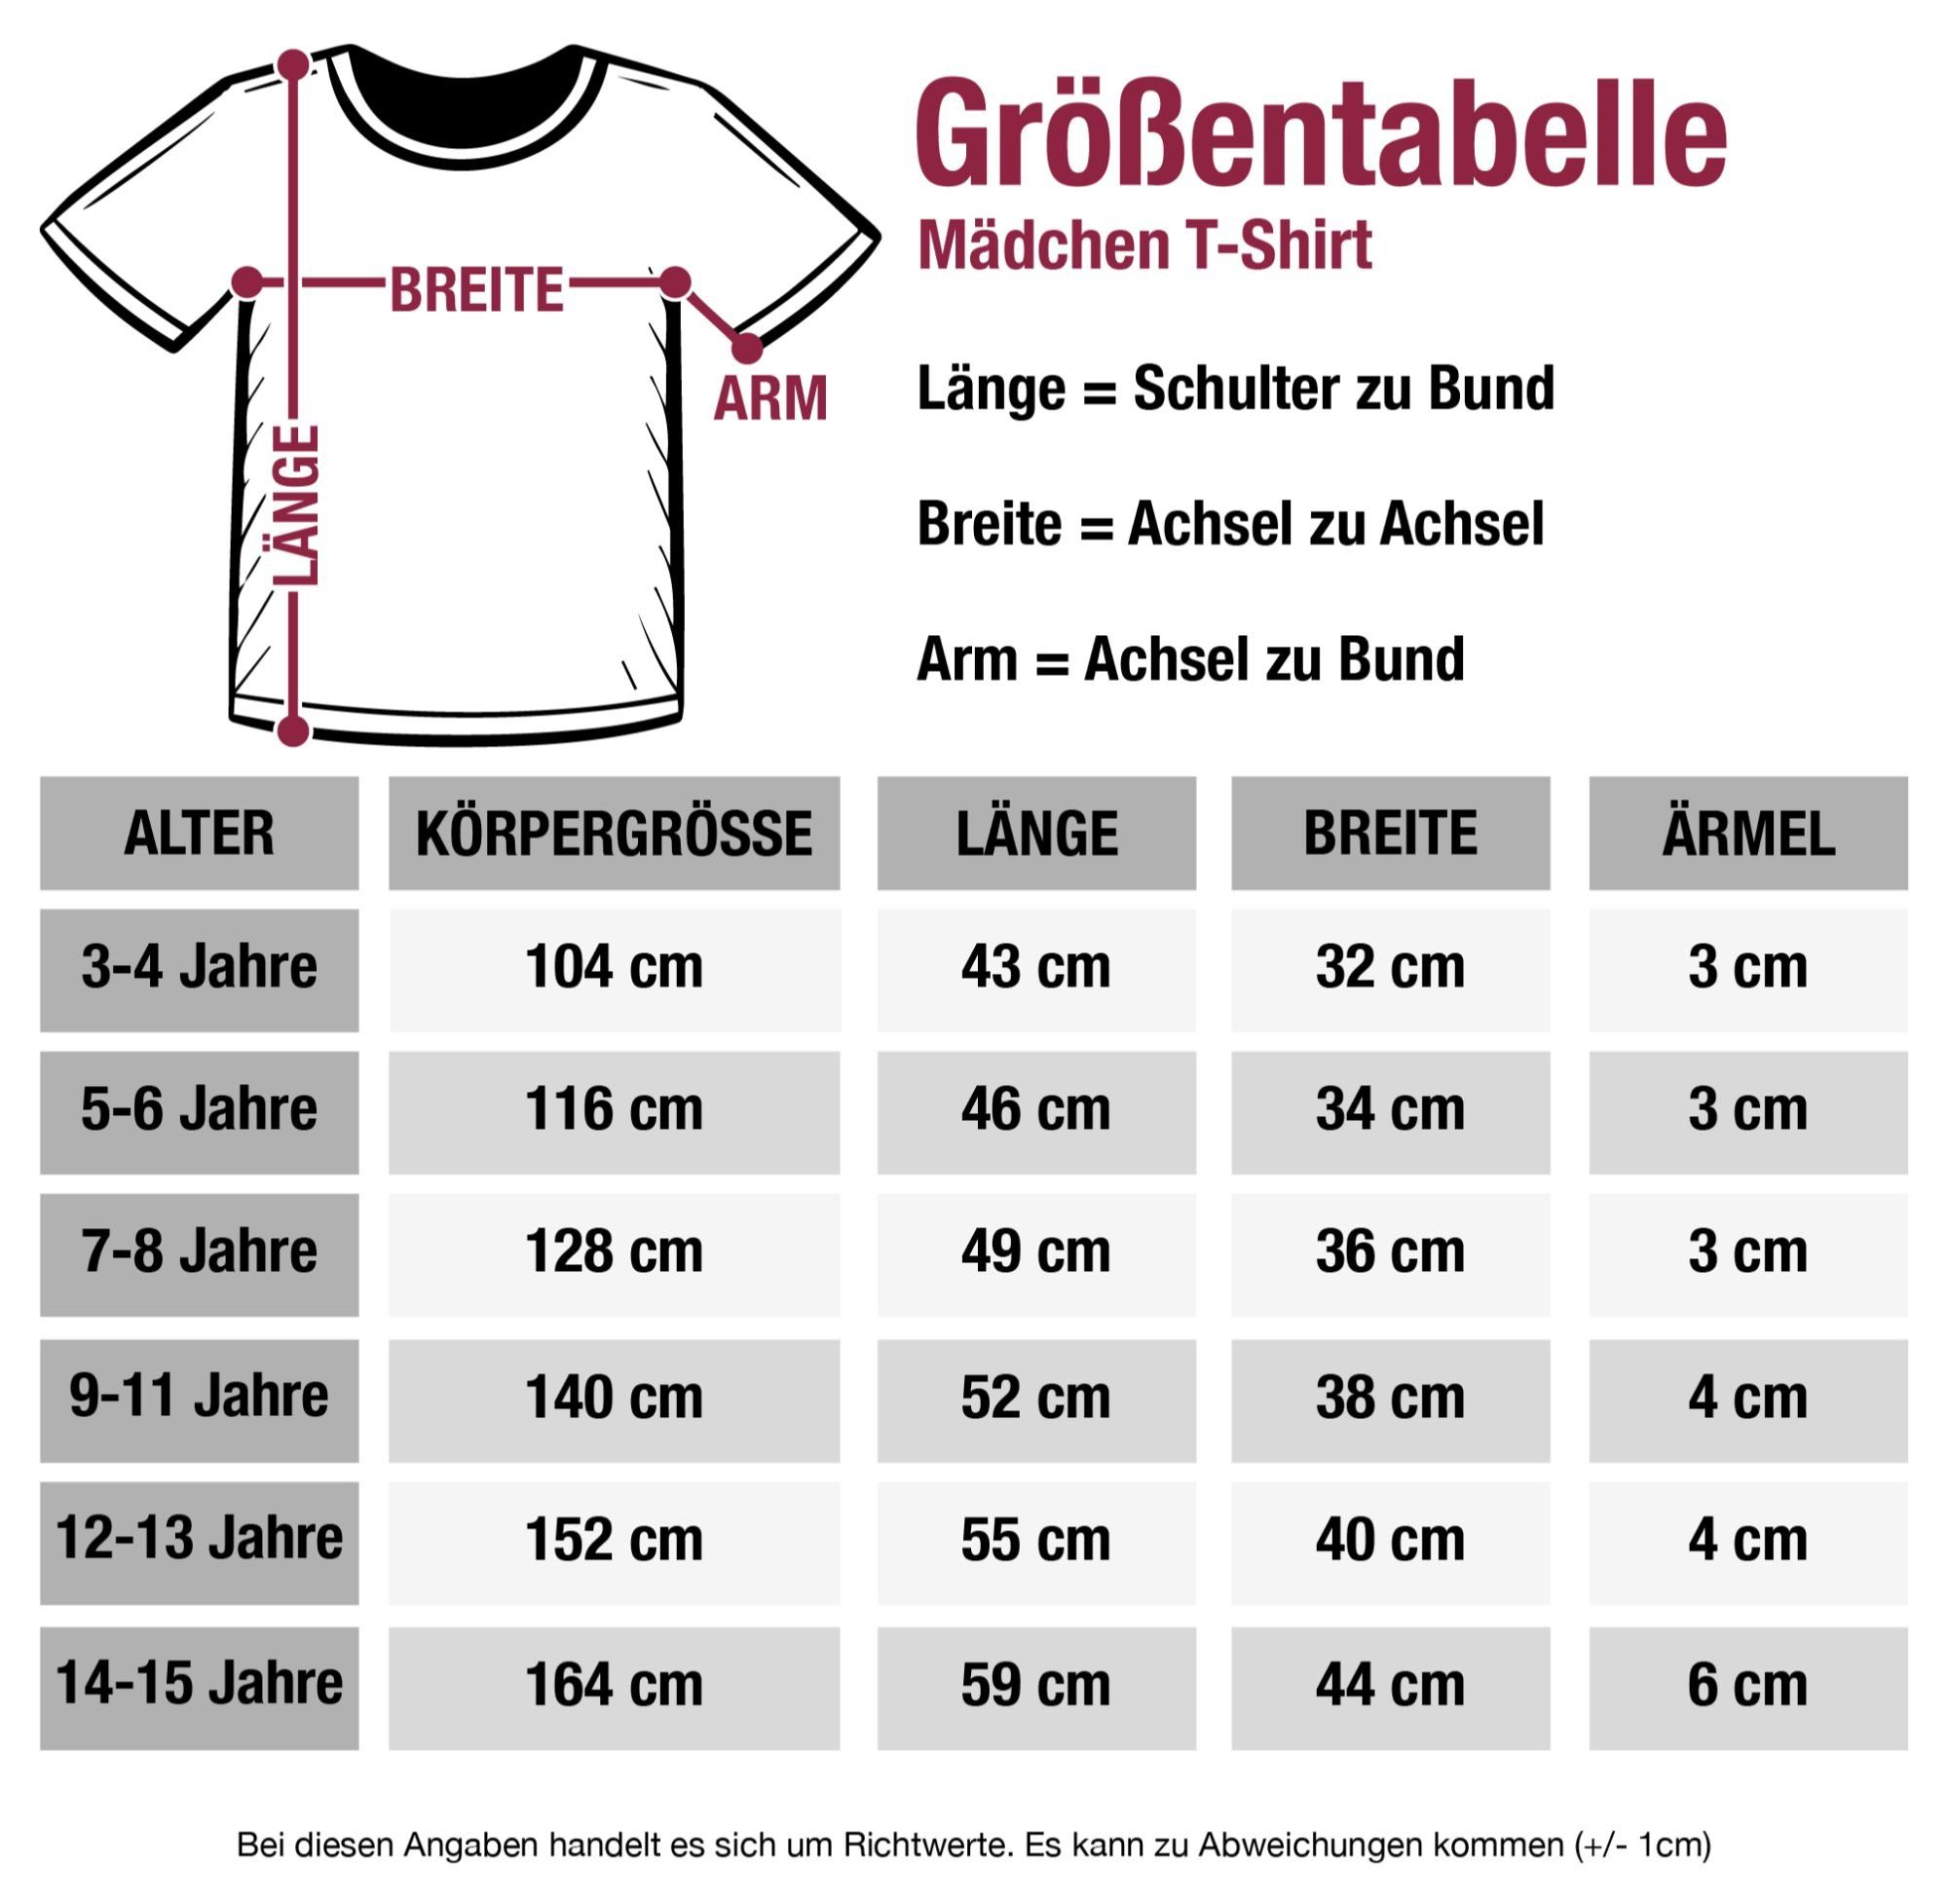 Glitzer Kindergarten Kindergarten Einhorn Hallo im Shirtracer 2 - Rosa T-Shirt jetzt